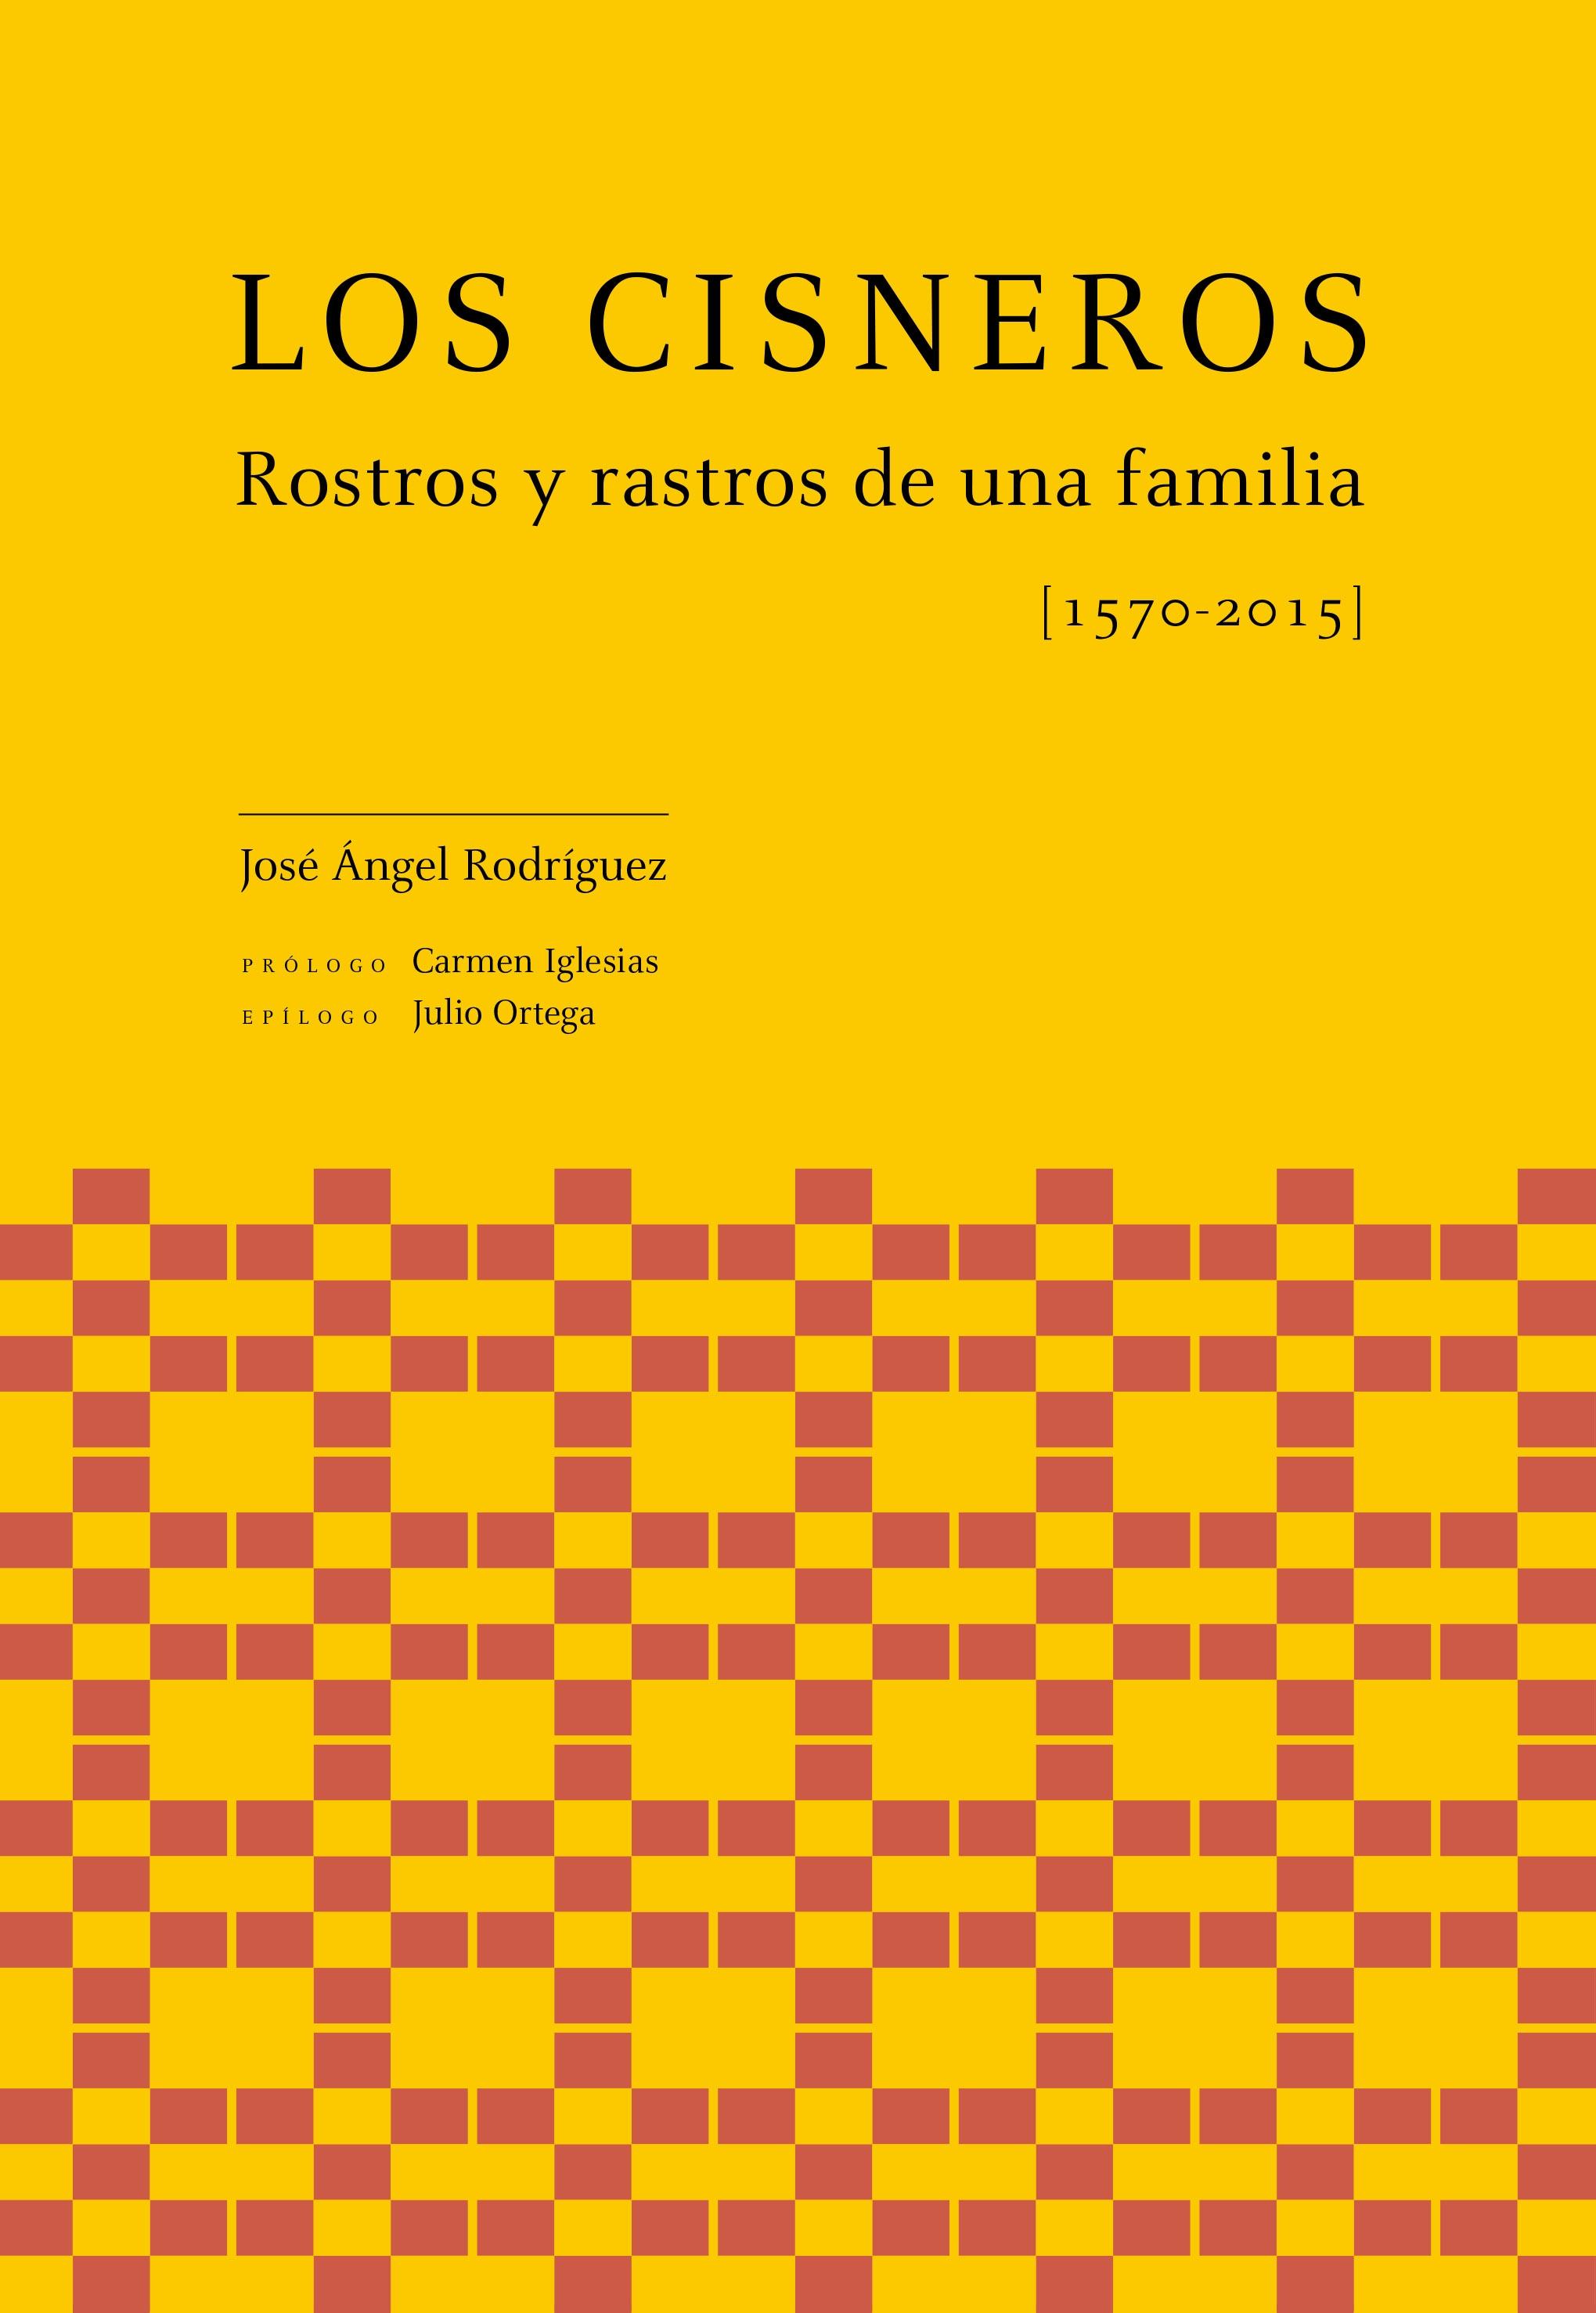 Los Cisneros. Rostros y rastros de una familia (1570-2015)